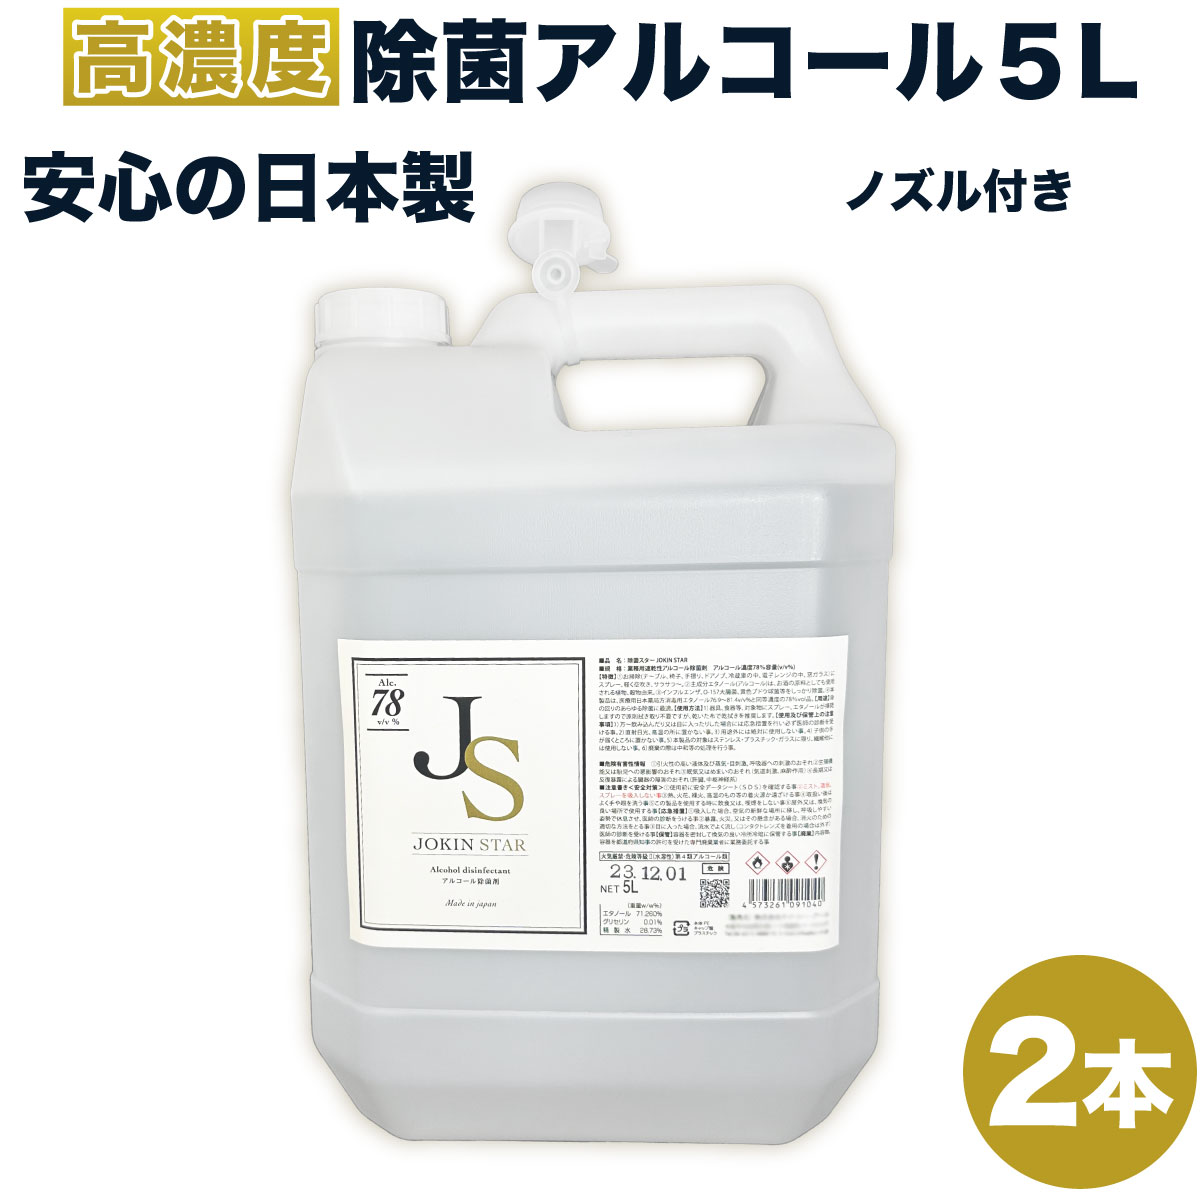 アルコール消毒液 除菌スター 78 JOKIN STAR78 アルコール5L*2本セット